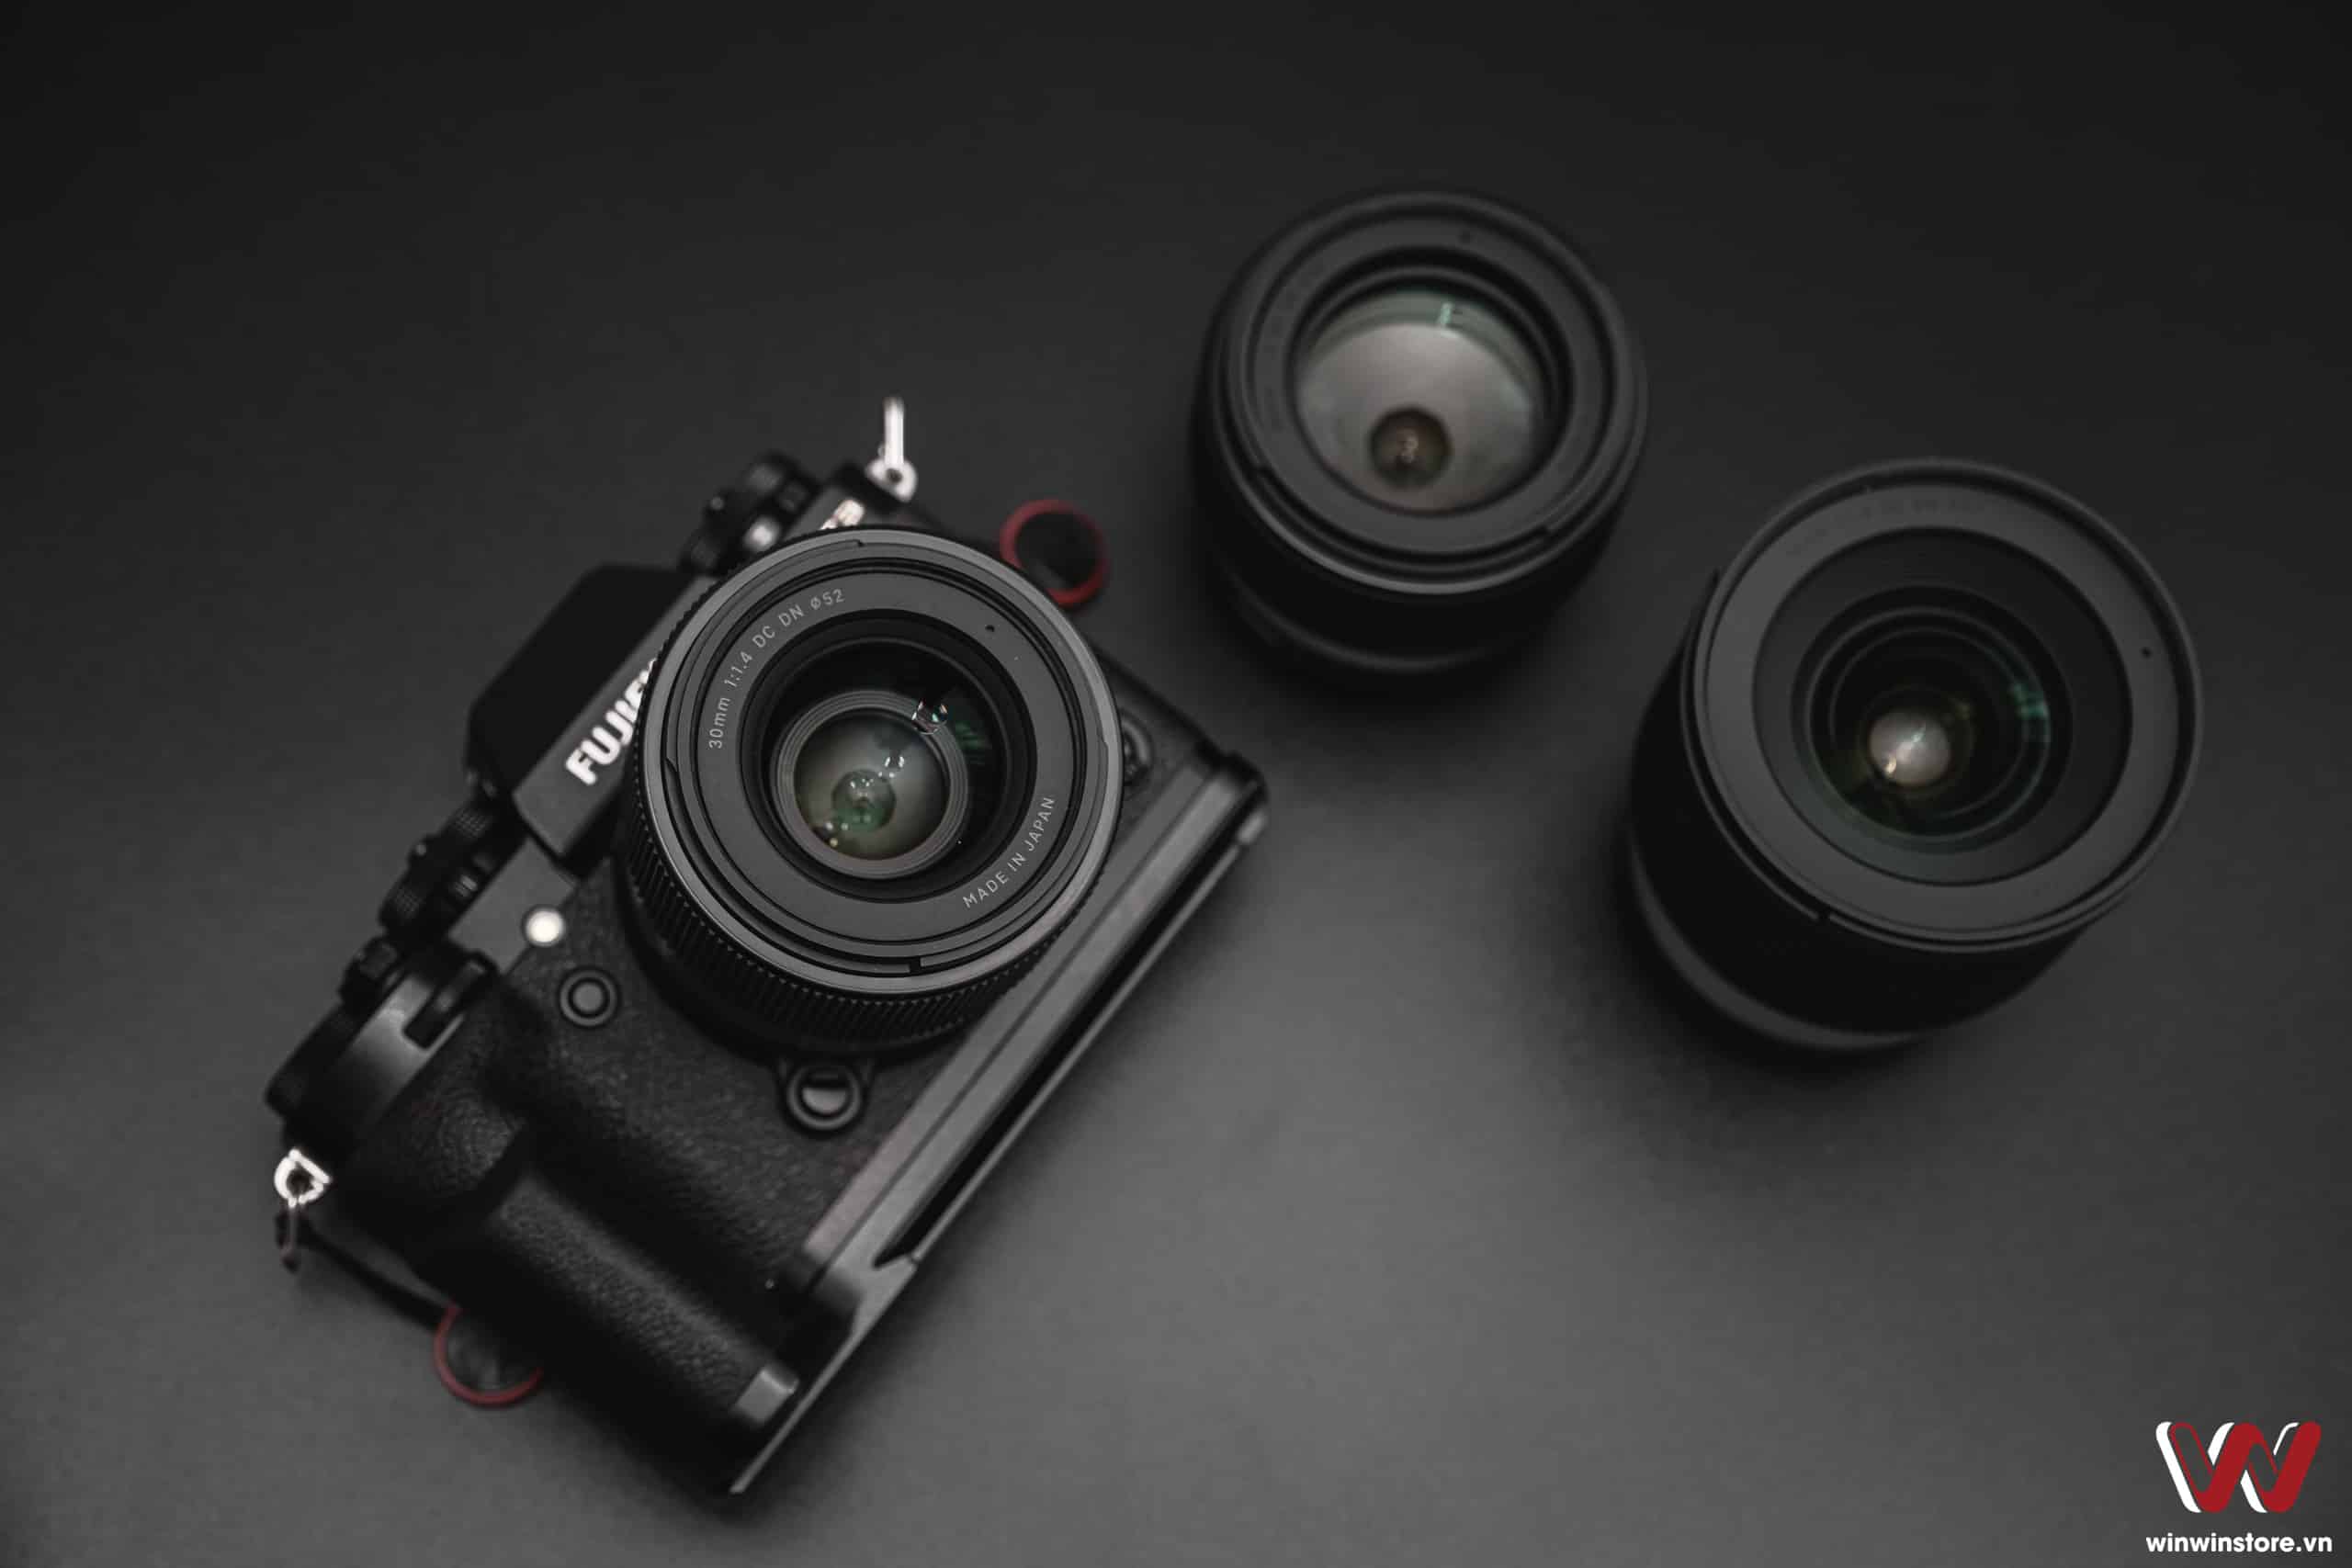 Trên tay ống kính Sigma 30mm F1.4 DC DN Contemporary cho Fujifilm: Hoàn thiện tốt và giá cũng tốt nữa